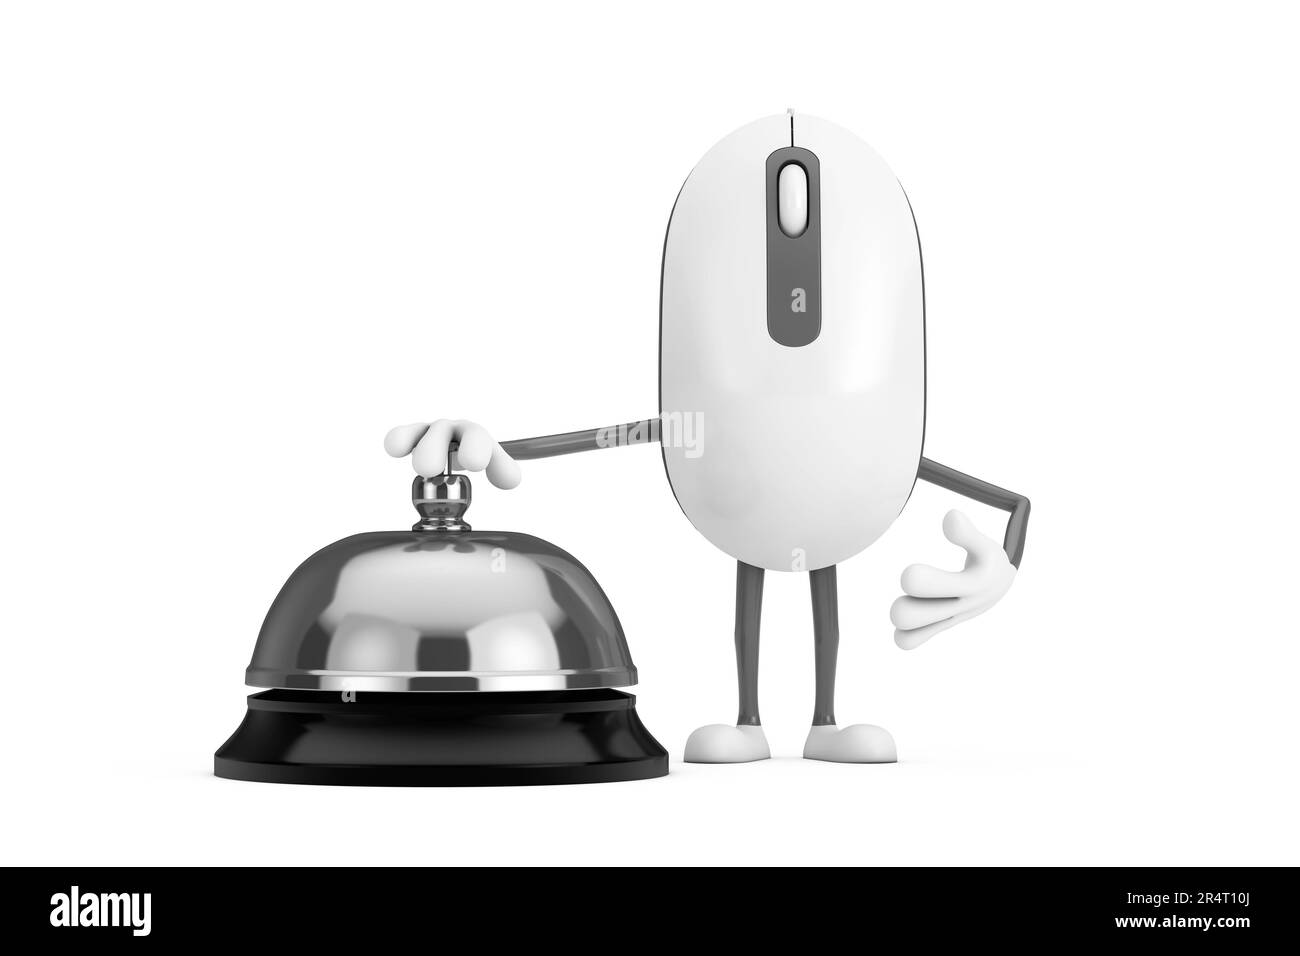 Ordinateur souris dessin animé personnage mascotte avec service Hôtel Bell appelez sur un fond blanc. 3D rendu Banque D'Images